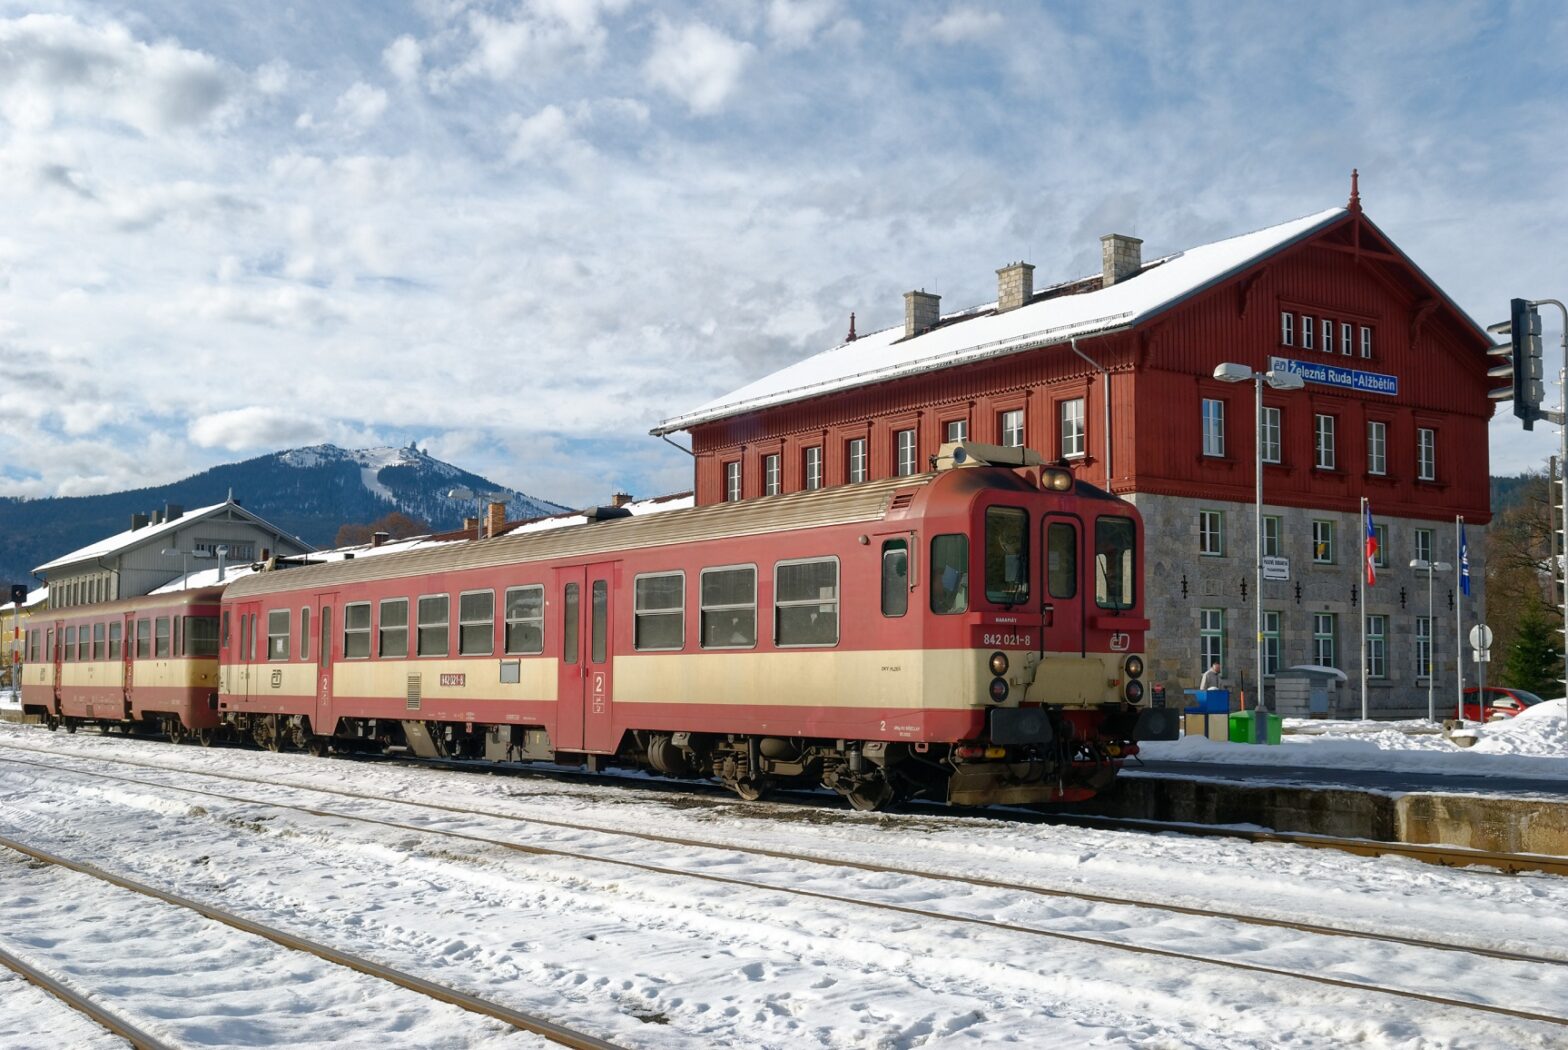 Im tschechischen Bahnhofsteil steht der Zug abfahrbereit nach Klattau –Pilsen. Hinten grüßt der Große Arber. Foto: Jürgen Barteld